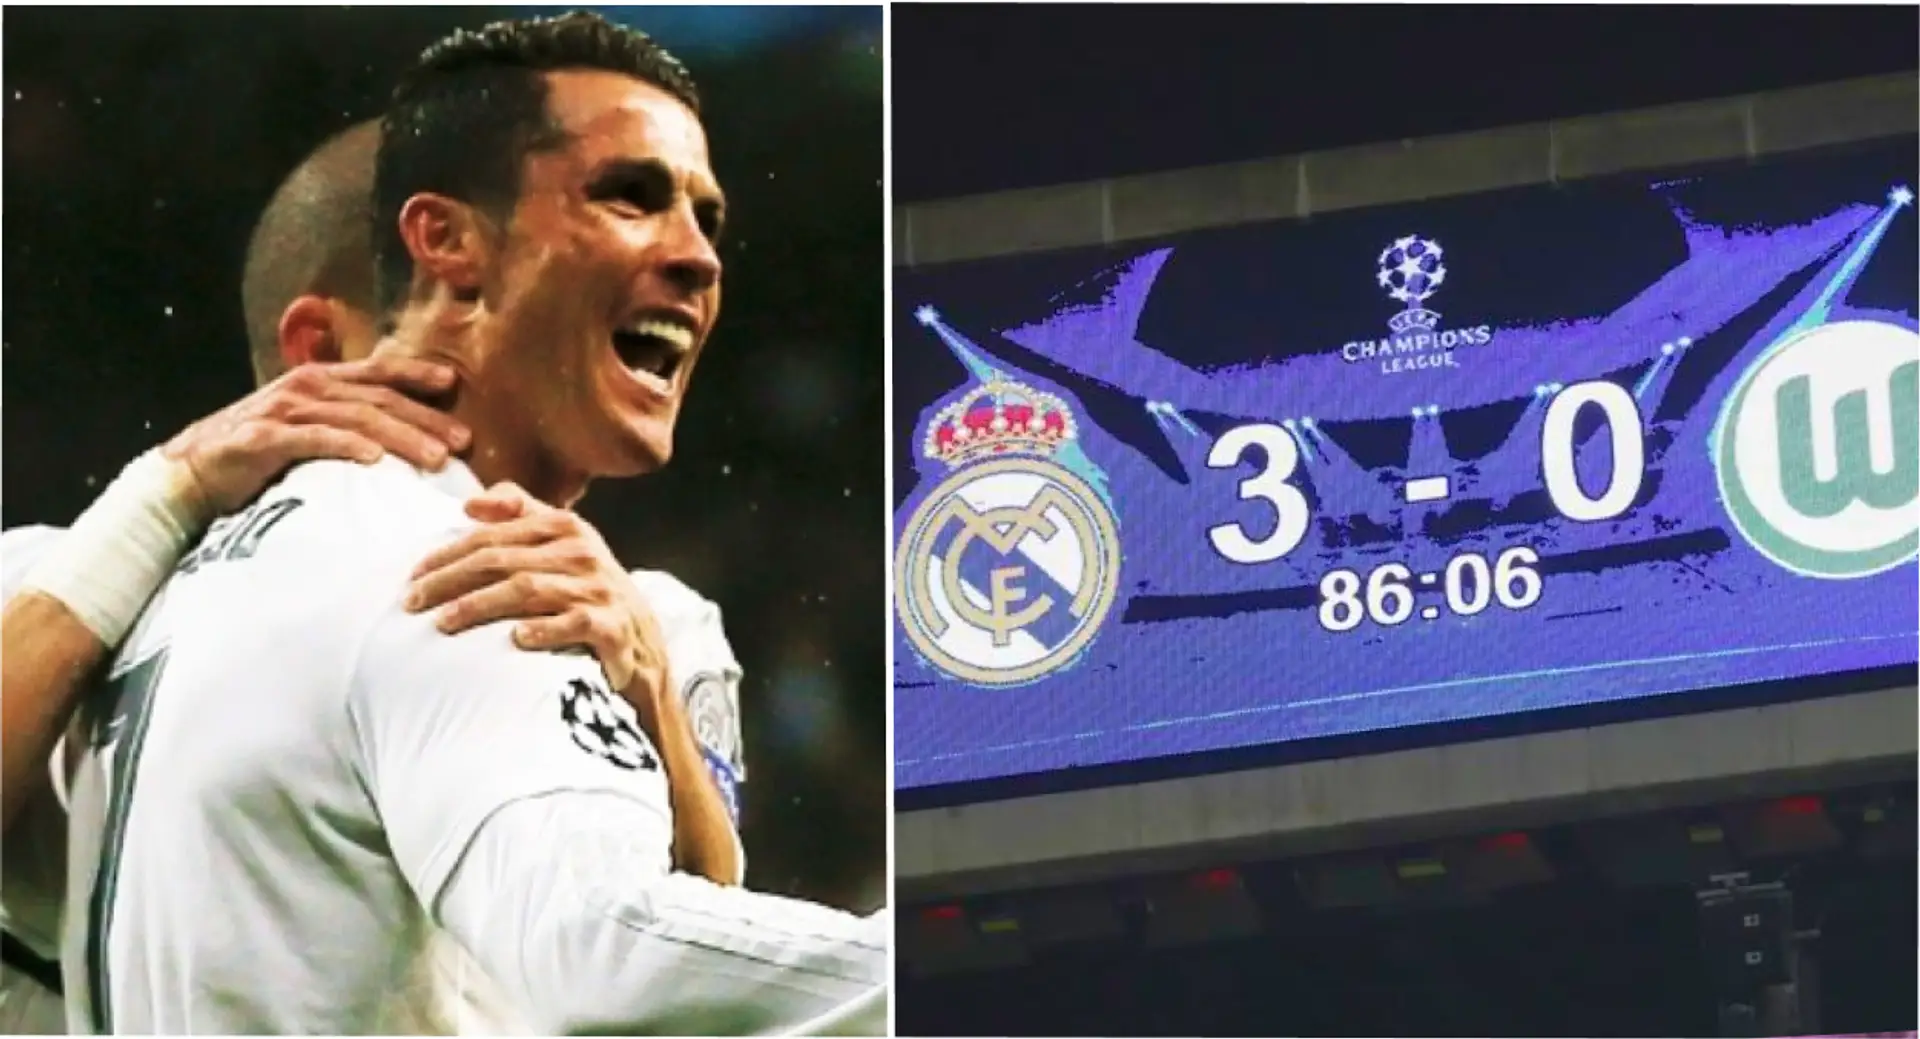 'Mañana marcaré 3 goles': Recordando el icónico hattrick de Cristiano Ronaldo en la remontada vs Wolfsburg